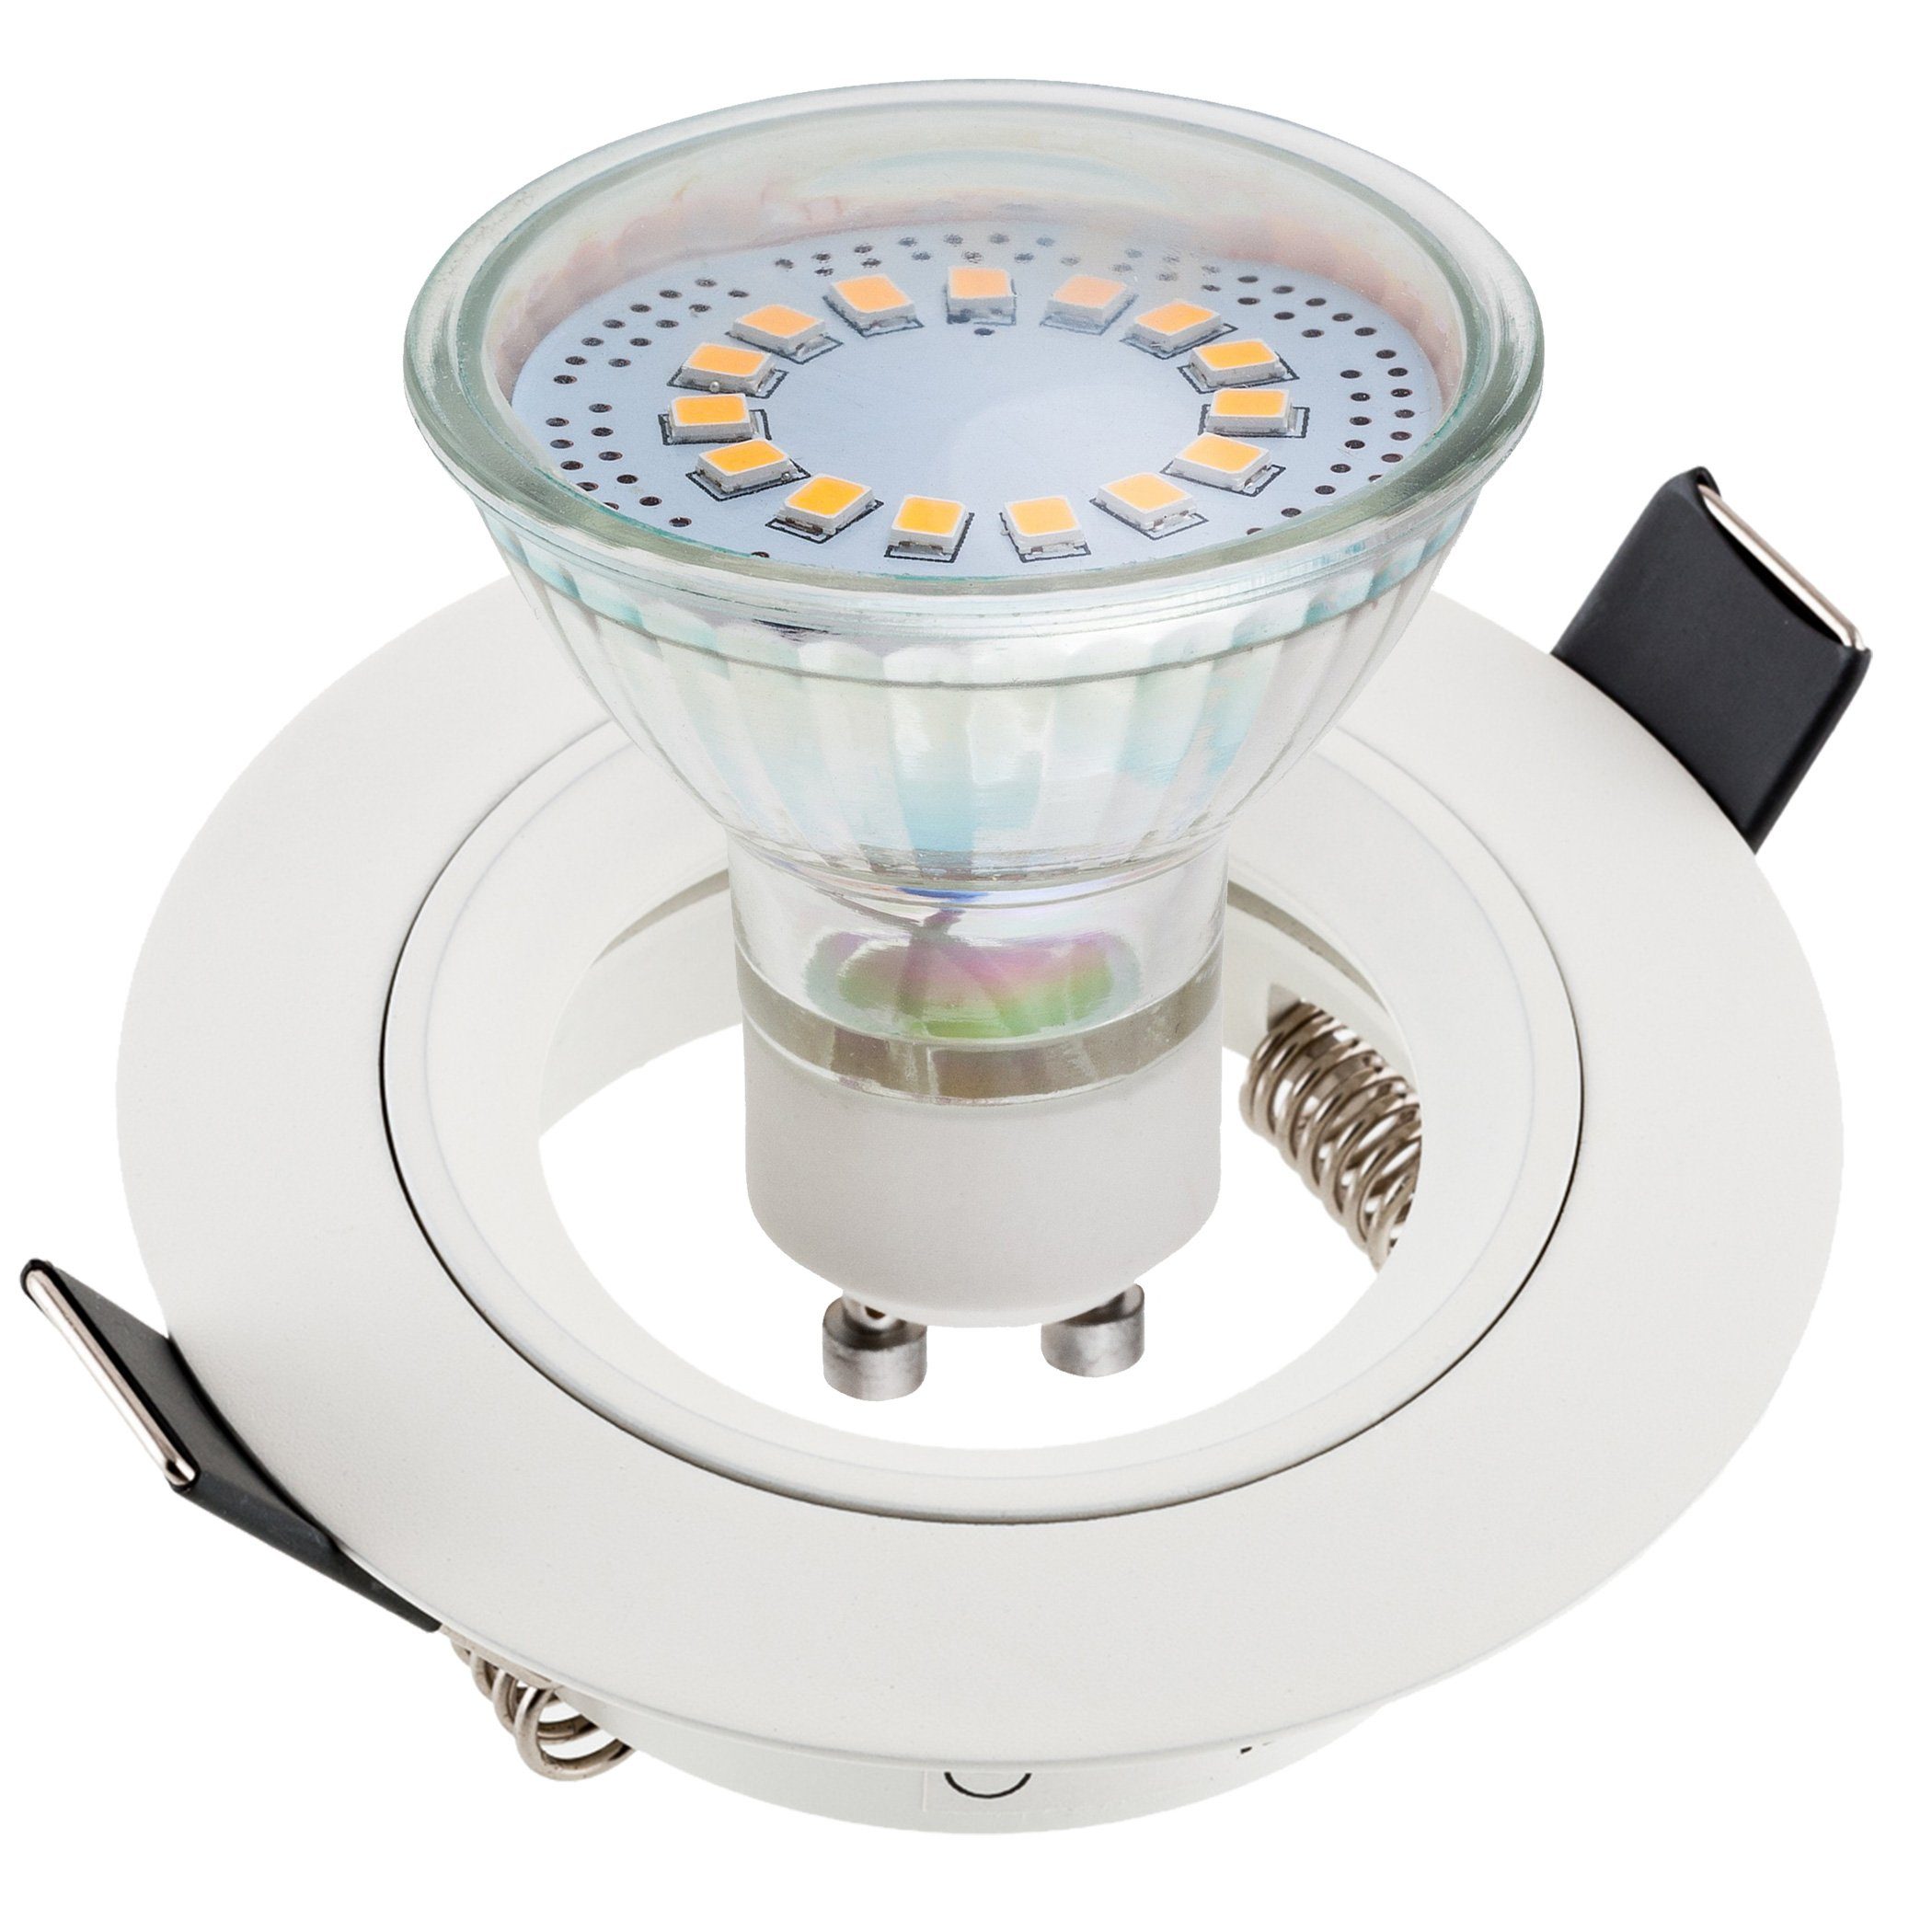 SEBSON LED Einbaustrahler »Einbaustrahler rund Alu weiß inkl. GU10 LED  Lampe 3,5W - Unterputz Decken Einbau Rahmen Lochdurchmesser 65mm« online  kaufen | OTTO